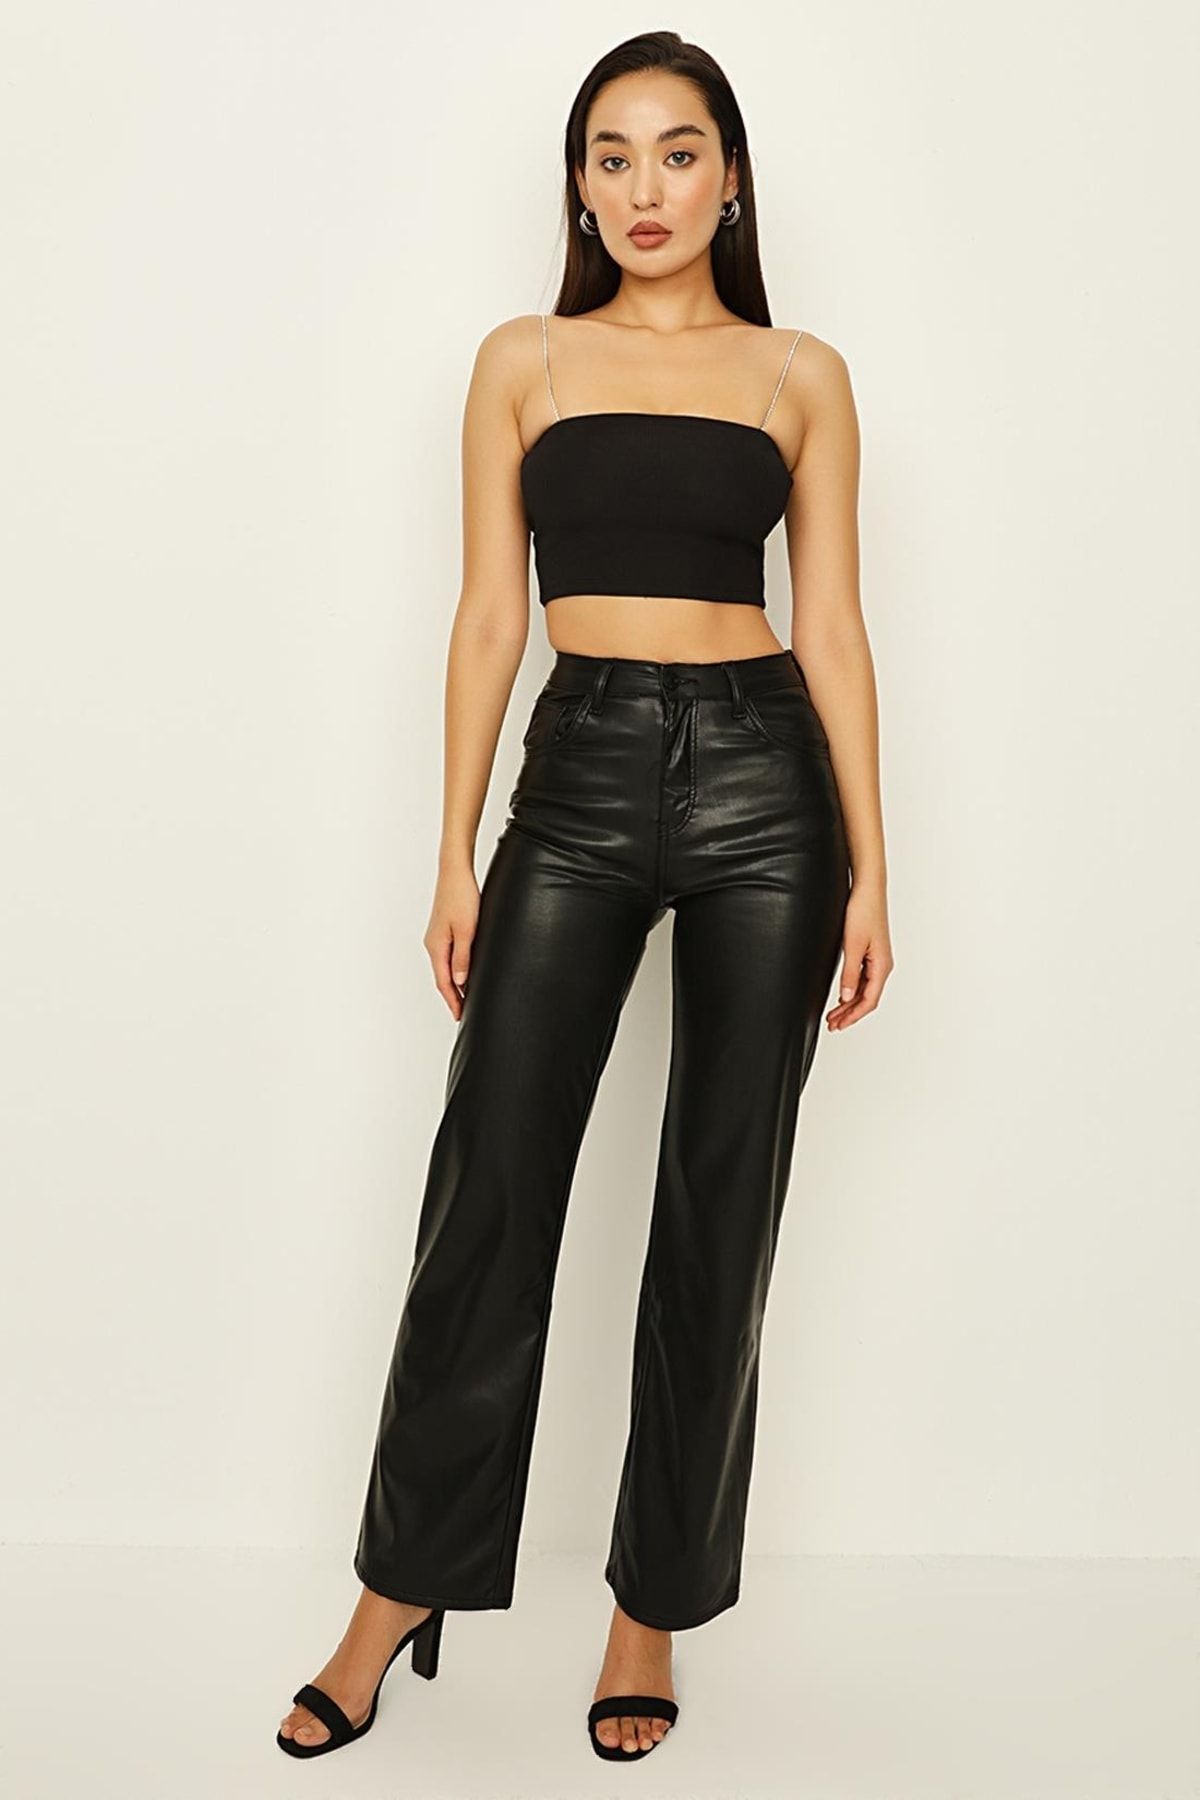 Select Moda Kadın Siyah Deri Görünümlü Geniş Paça Pantolon